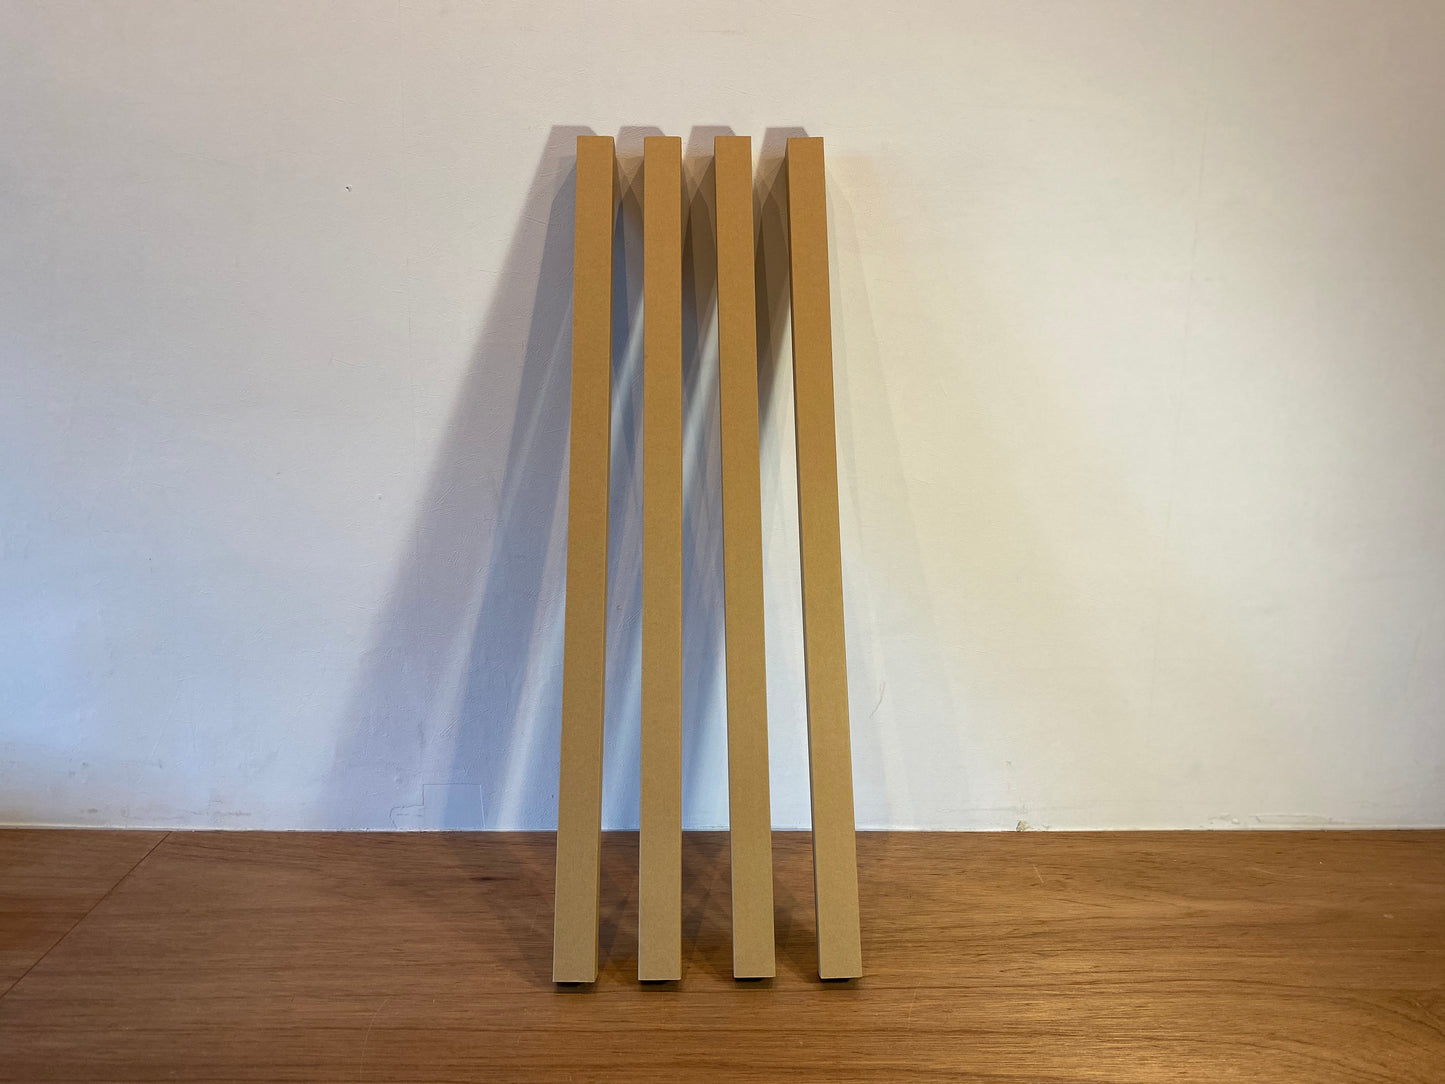 紙管(90cm×4本セット) / Paper tubes (90cm×4 pieces)